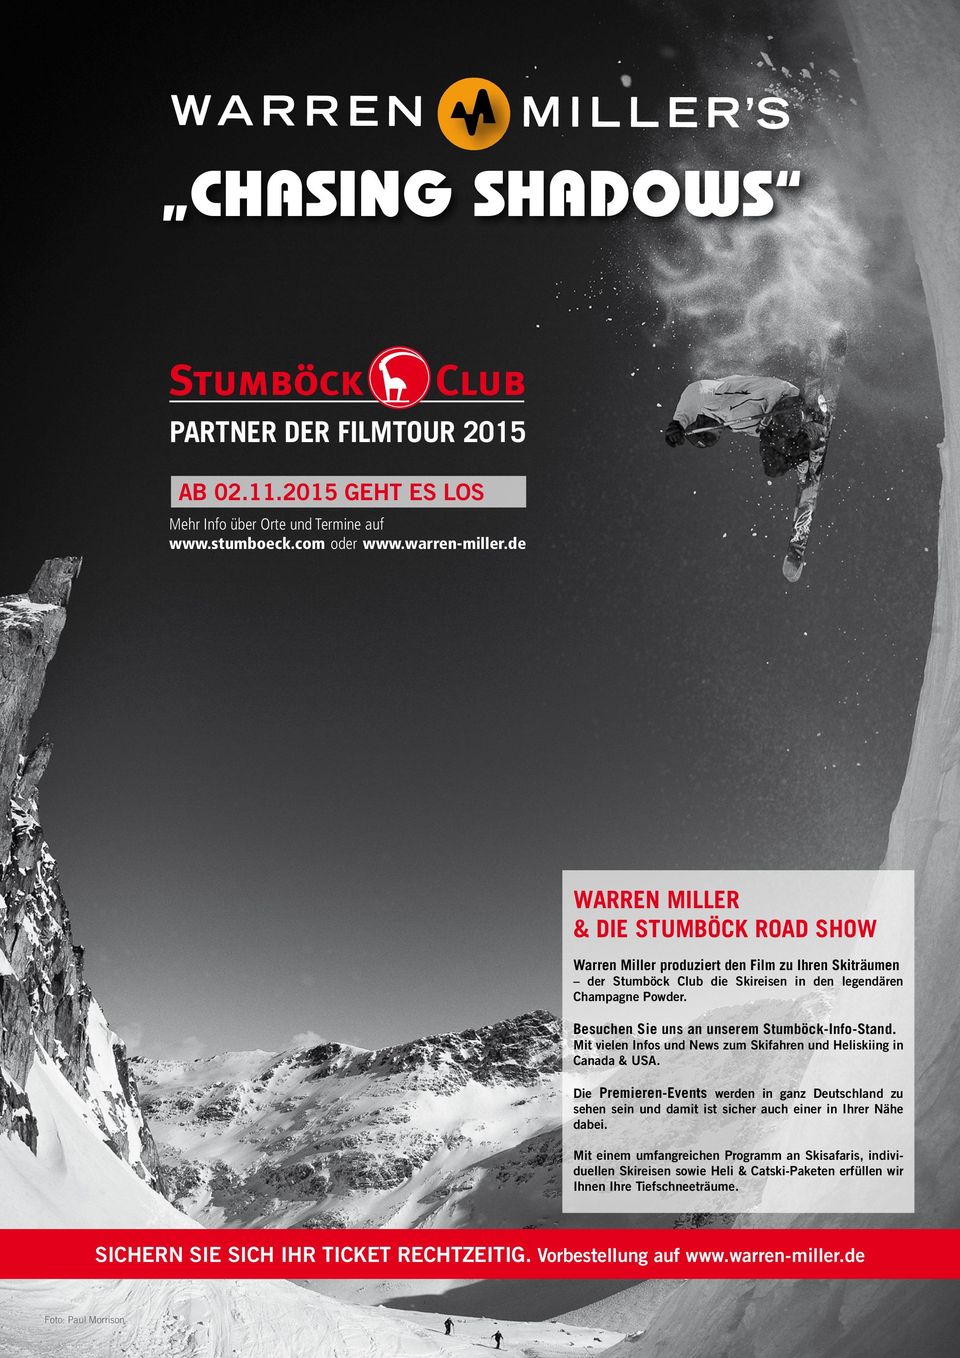 Besuchen Sie uns an unserem Stumböck-Info-Stand. Mit vielen Infos und News zum Skifahren und Heliskiing in Canada & USA.